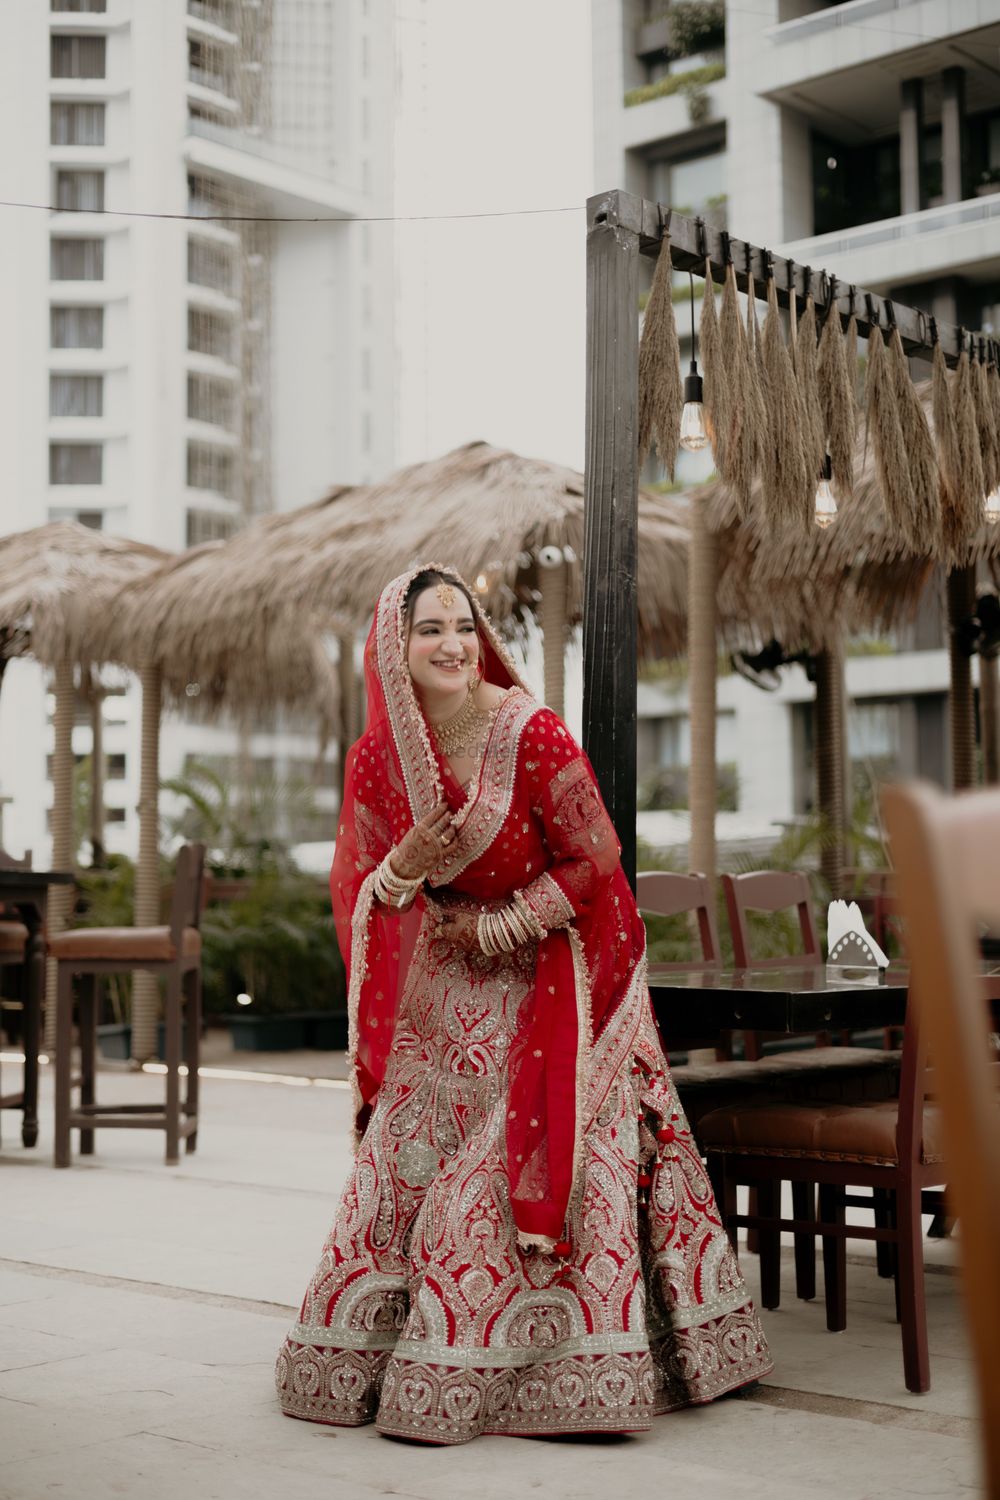 Photo From Shravani Ajay Wedding - By Yogi Zaveri Photography